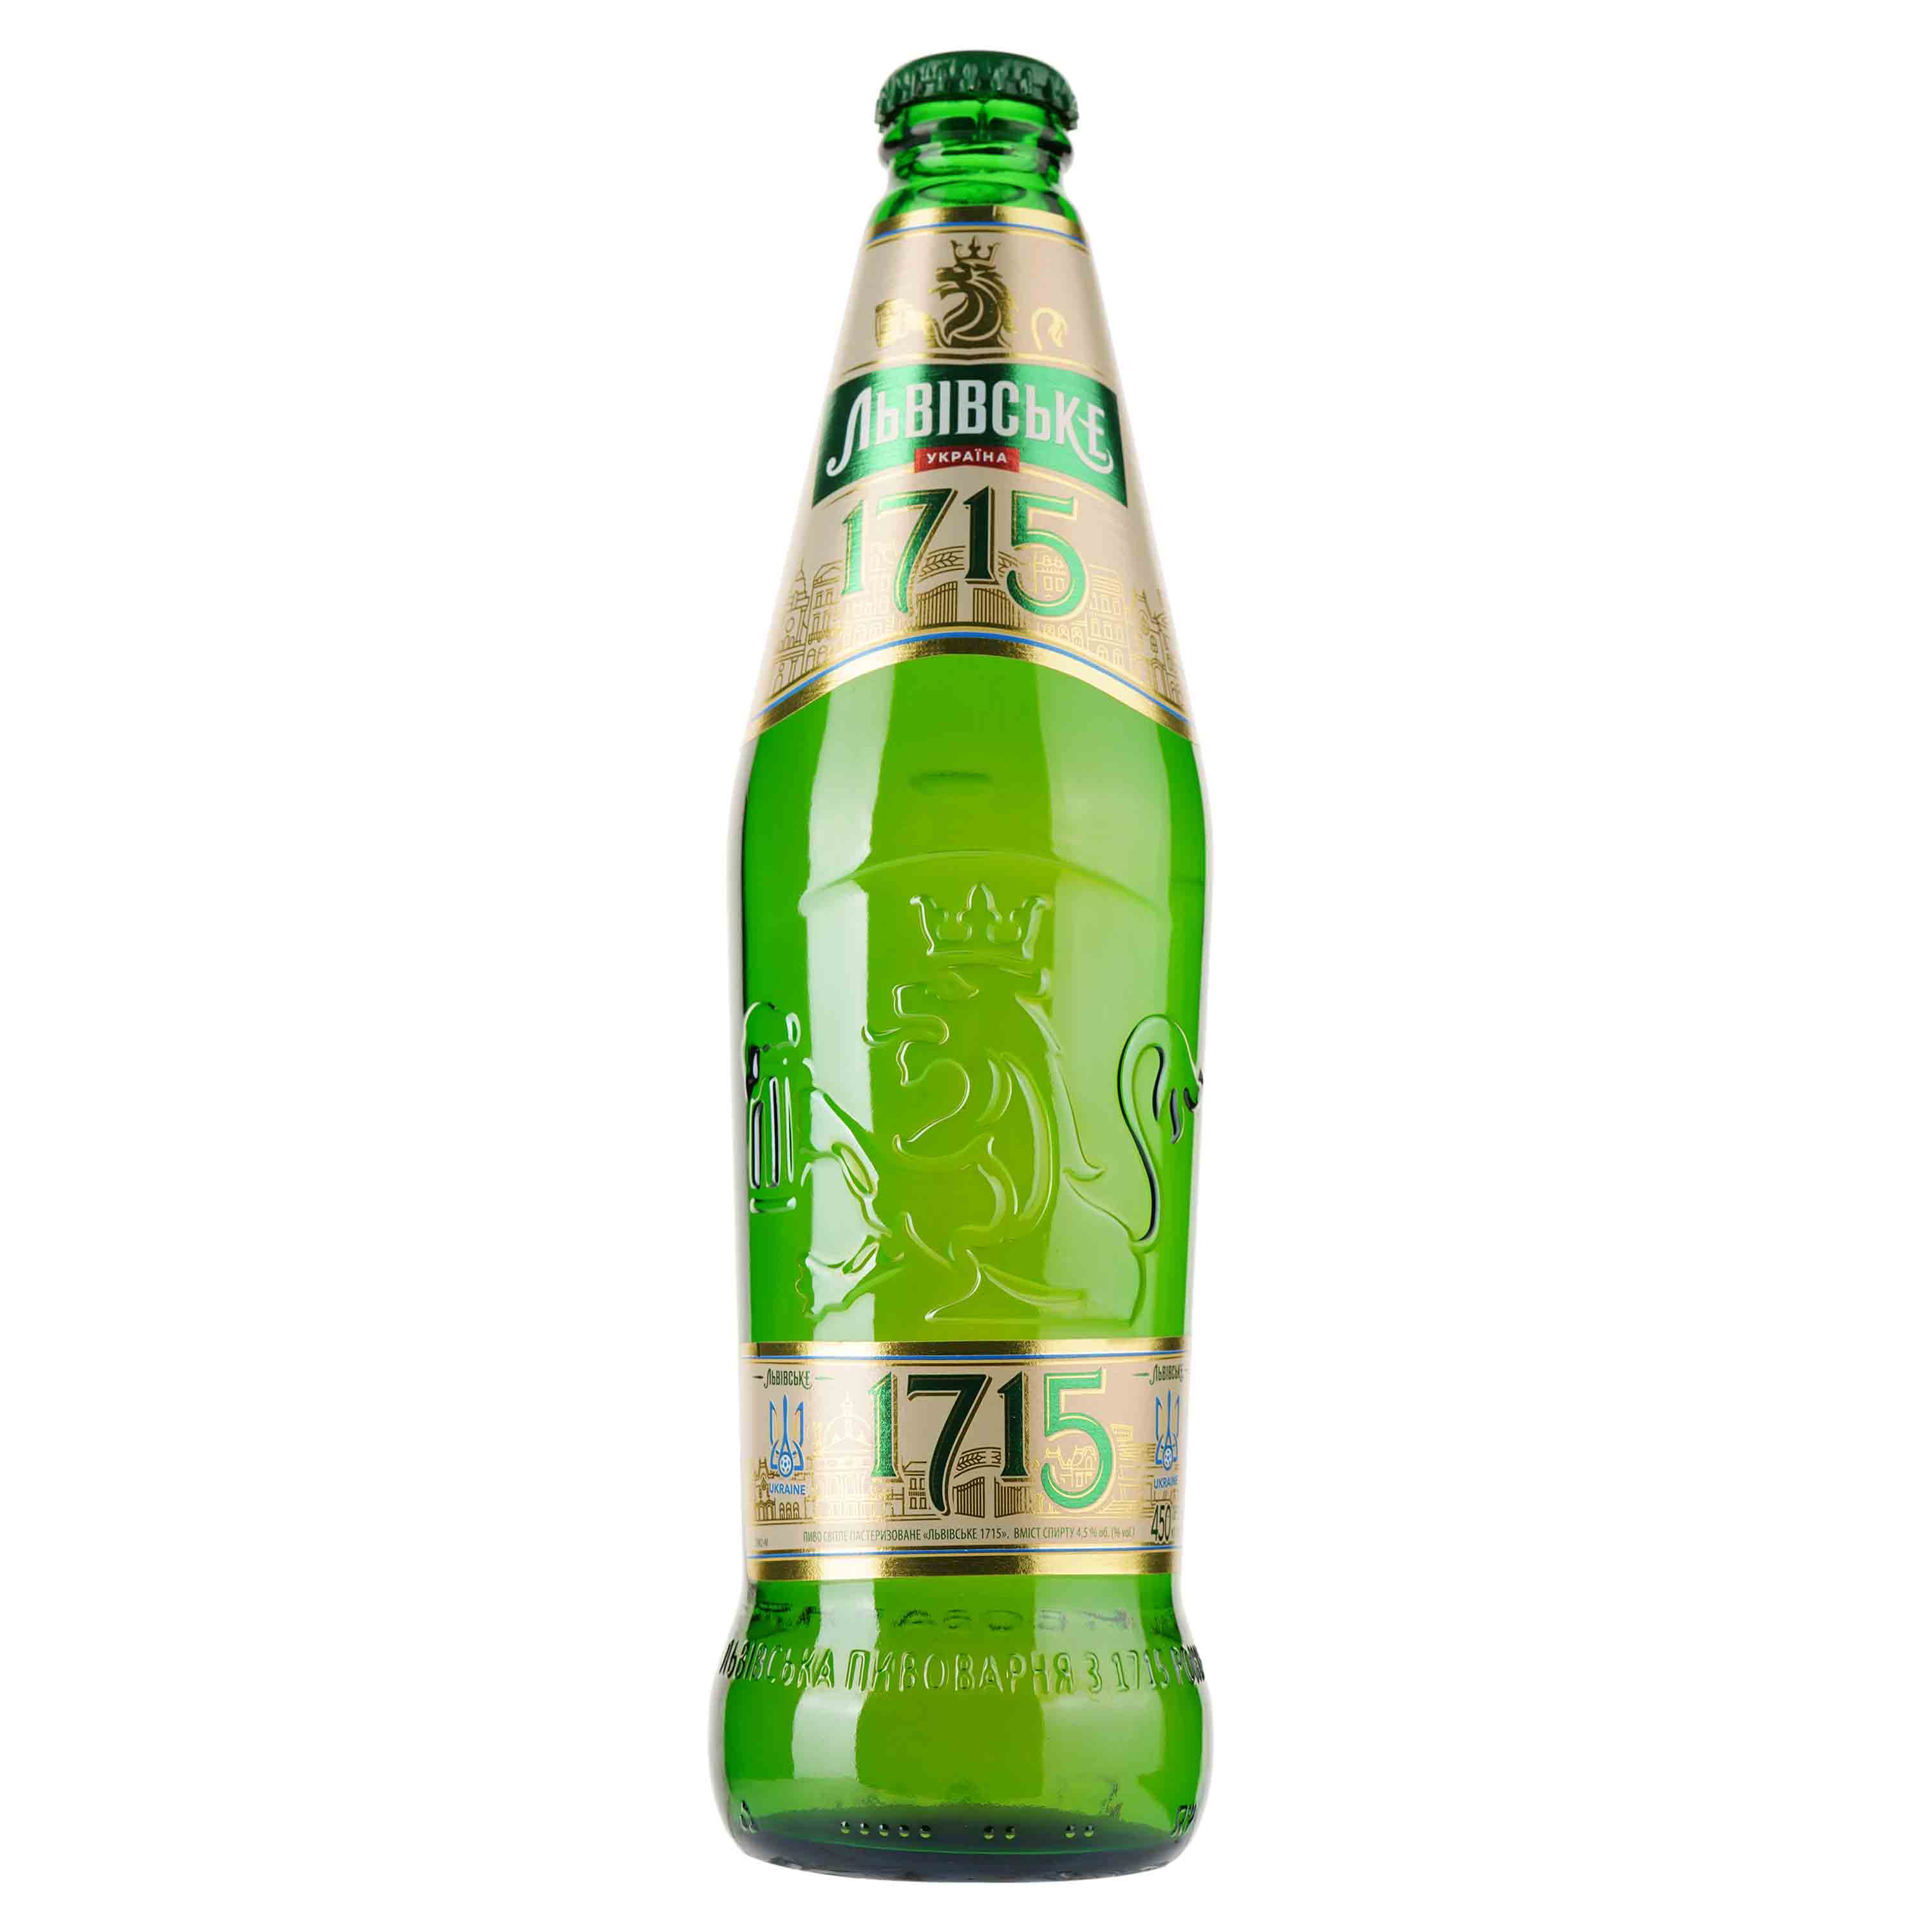 Пиво Львівське 1715, светлое, 4,5%, 0,45 л (927578) - фото 1